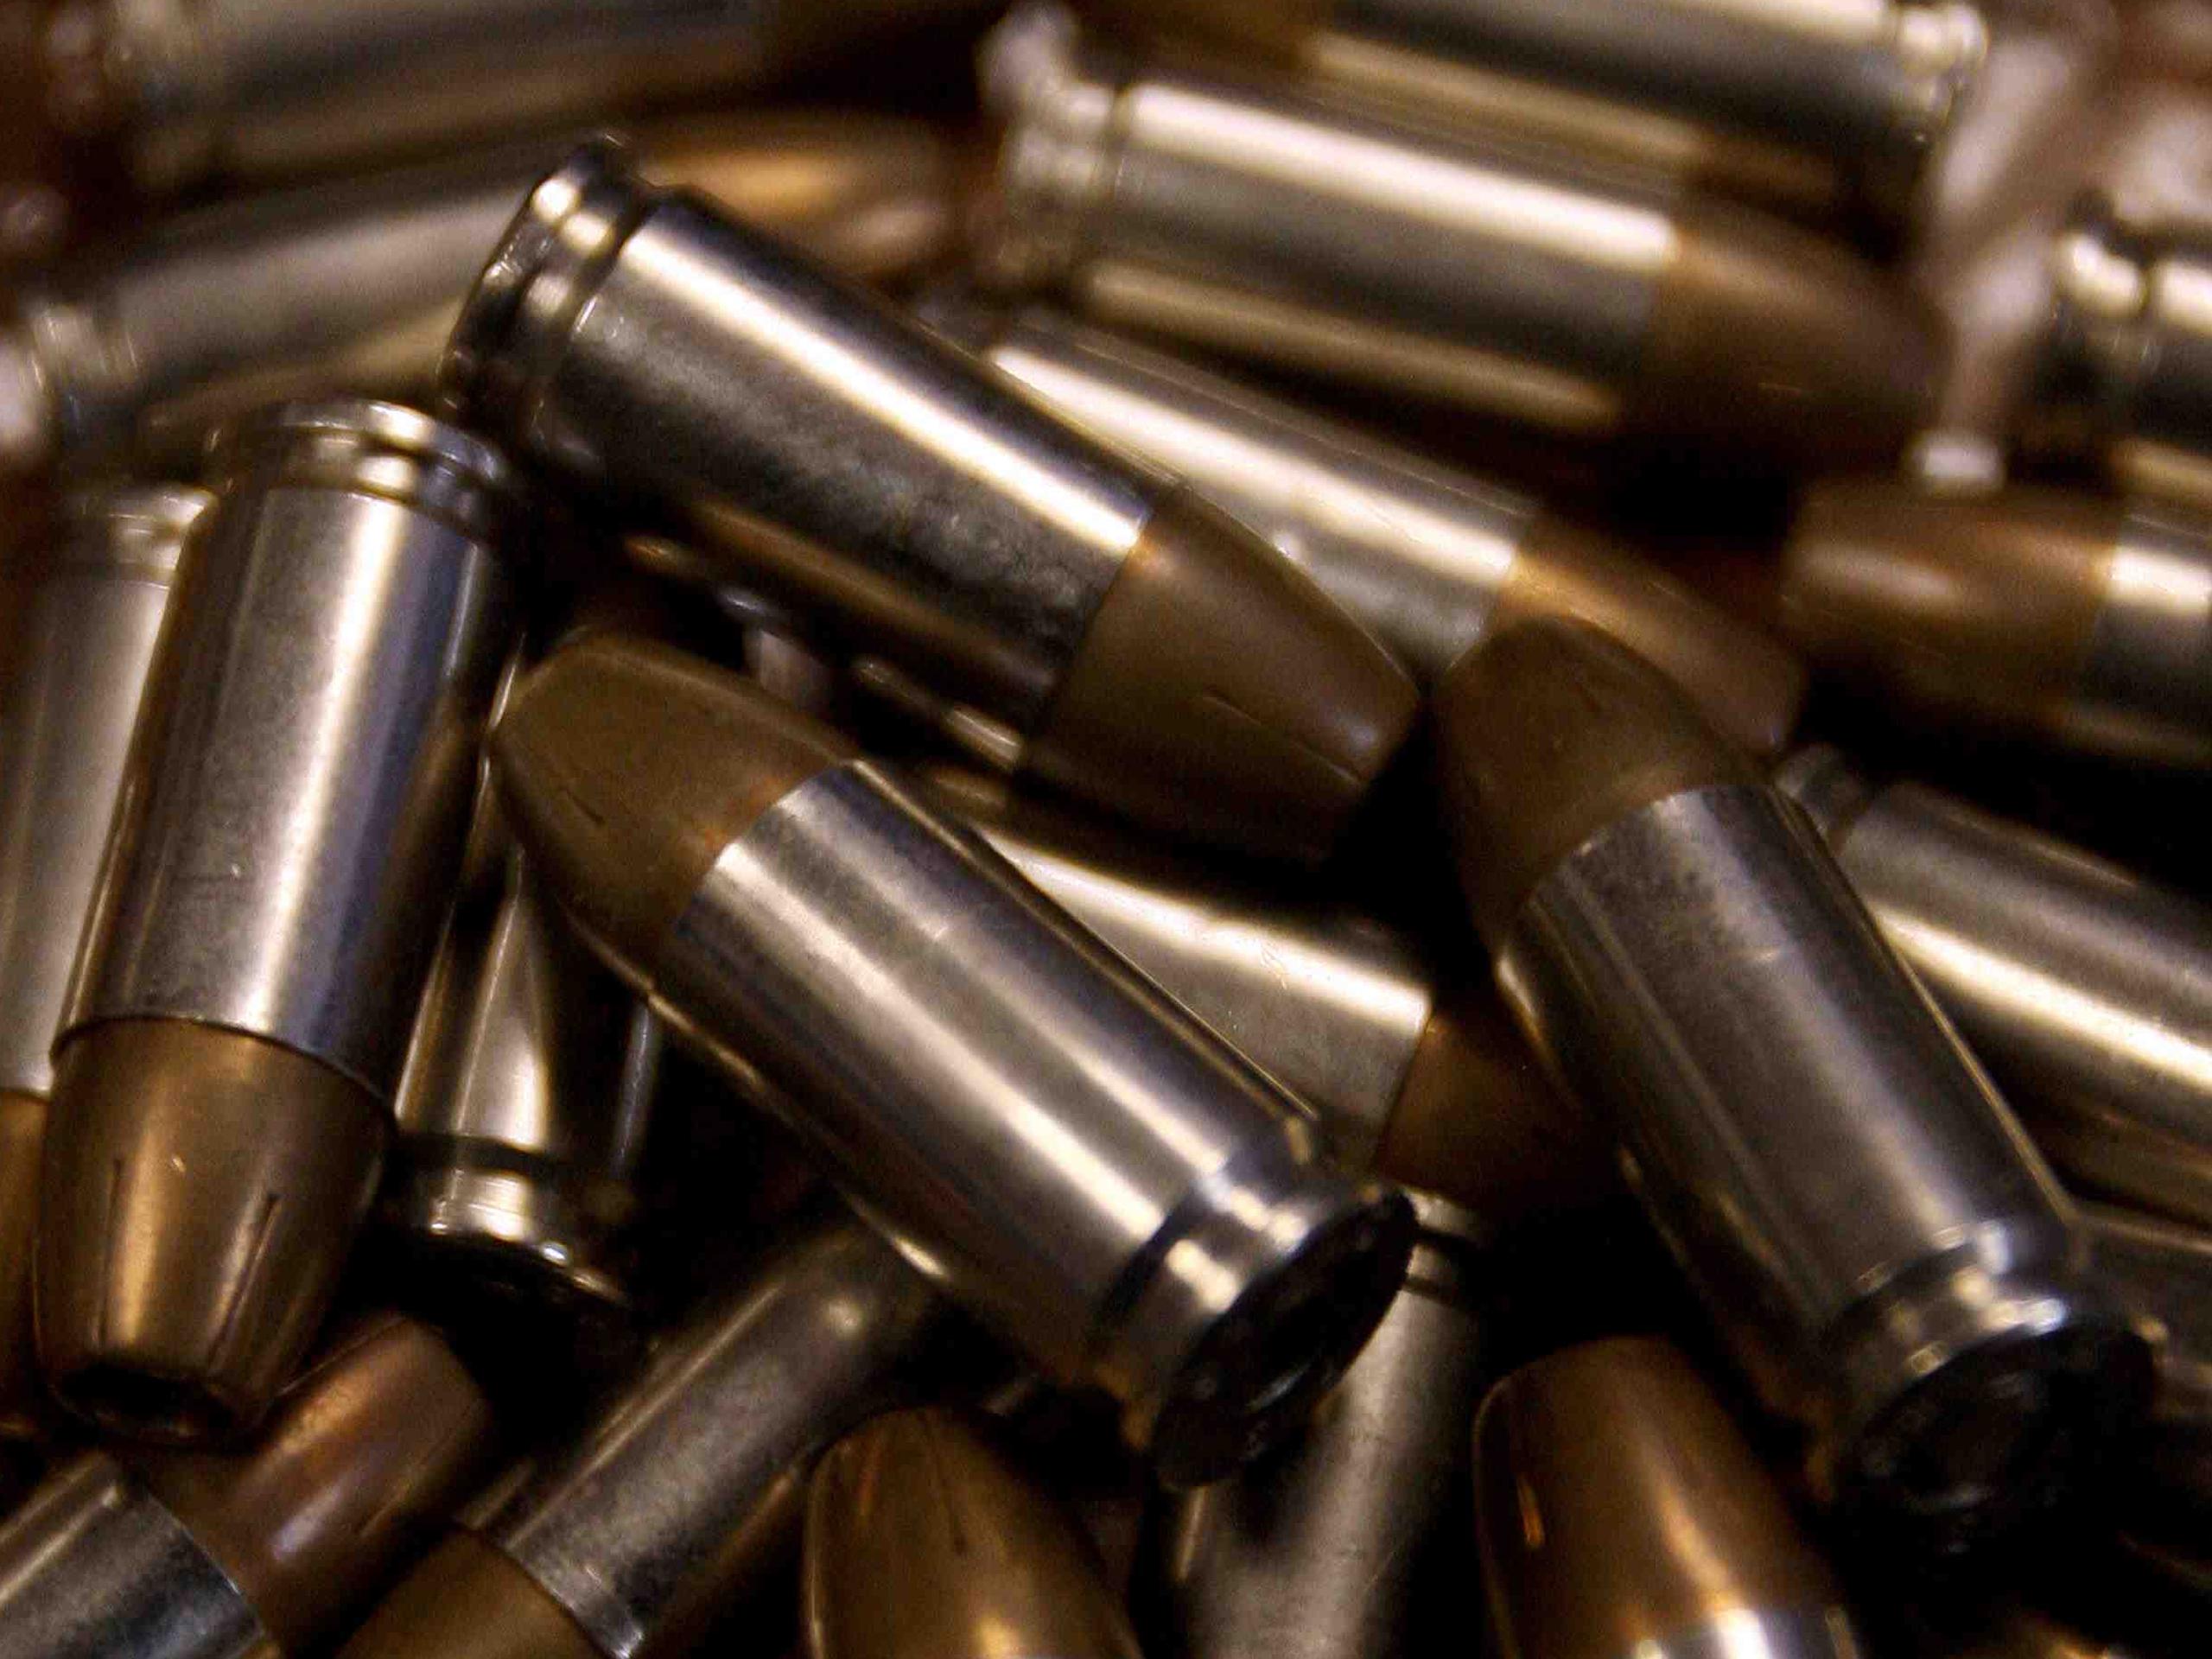 Las balas ocupadas son compatibles con rifles de fabricación rusa, que son utilizados por las fuerzas armadas ucranianas.